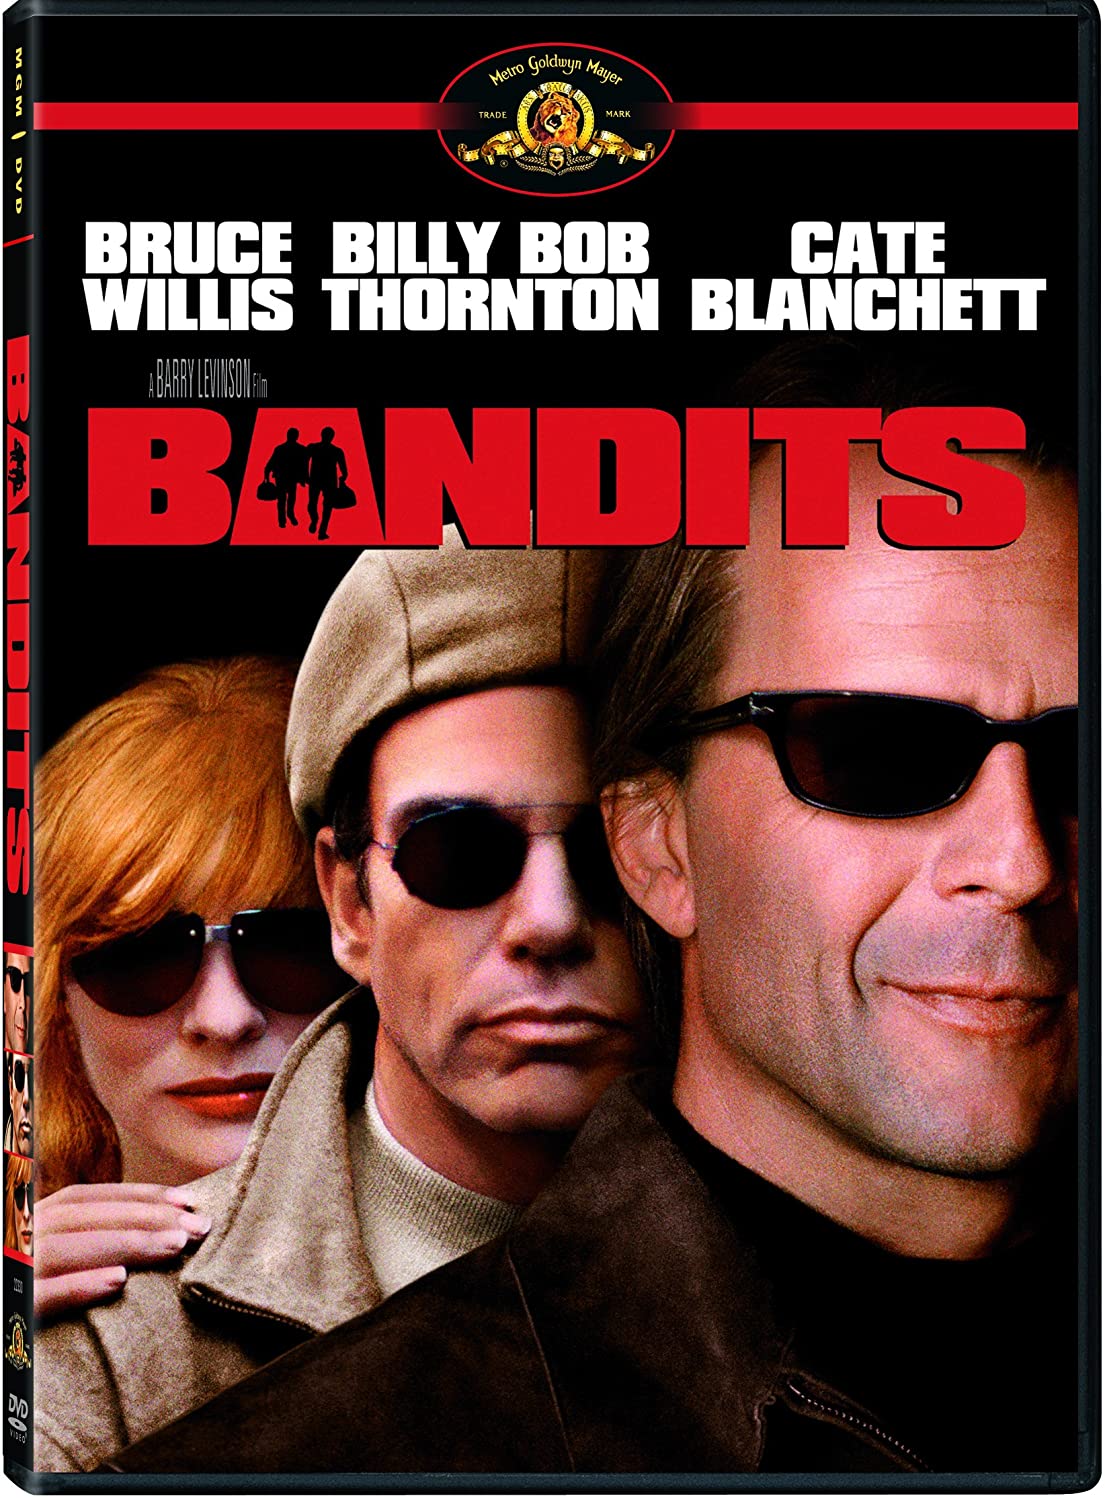 Bandits (2001)